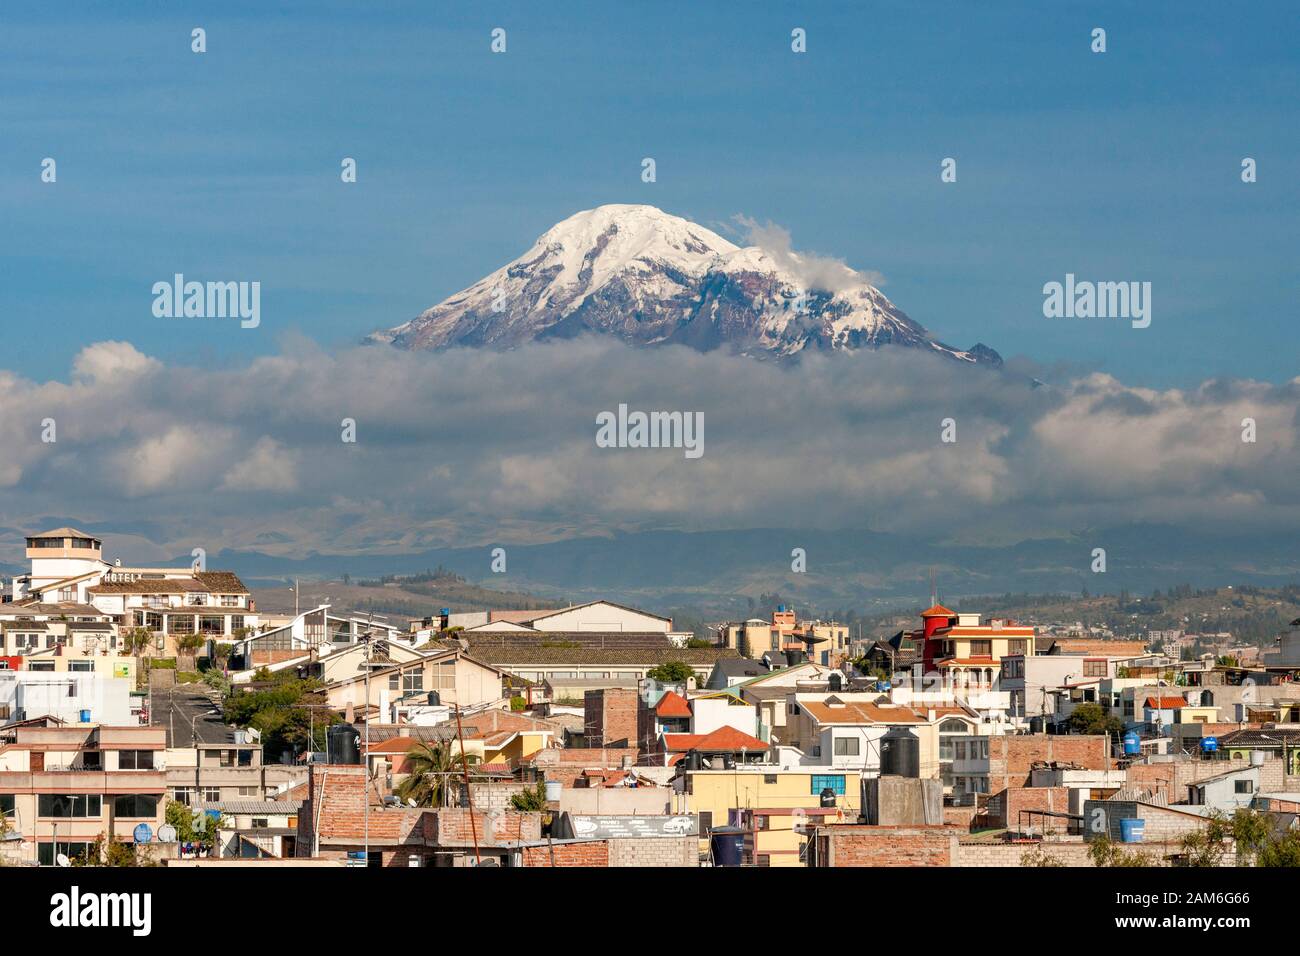 Monte Chimborazo vulcano (6268m) visto attraverso i tetti della città di Riobamba. Foto Stock